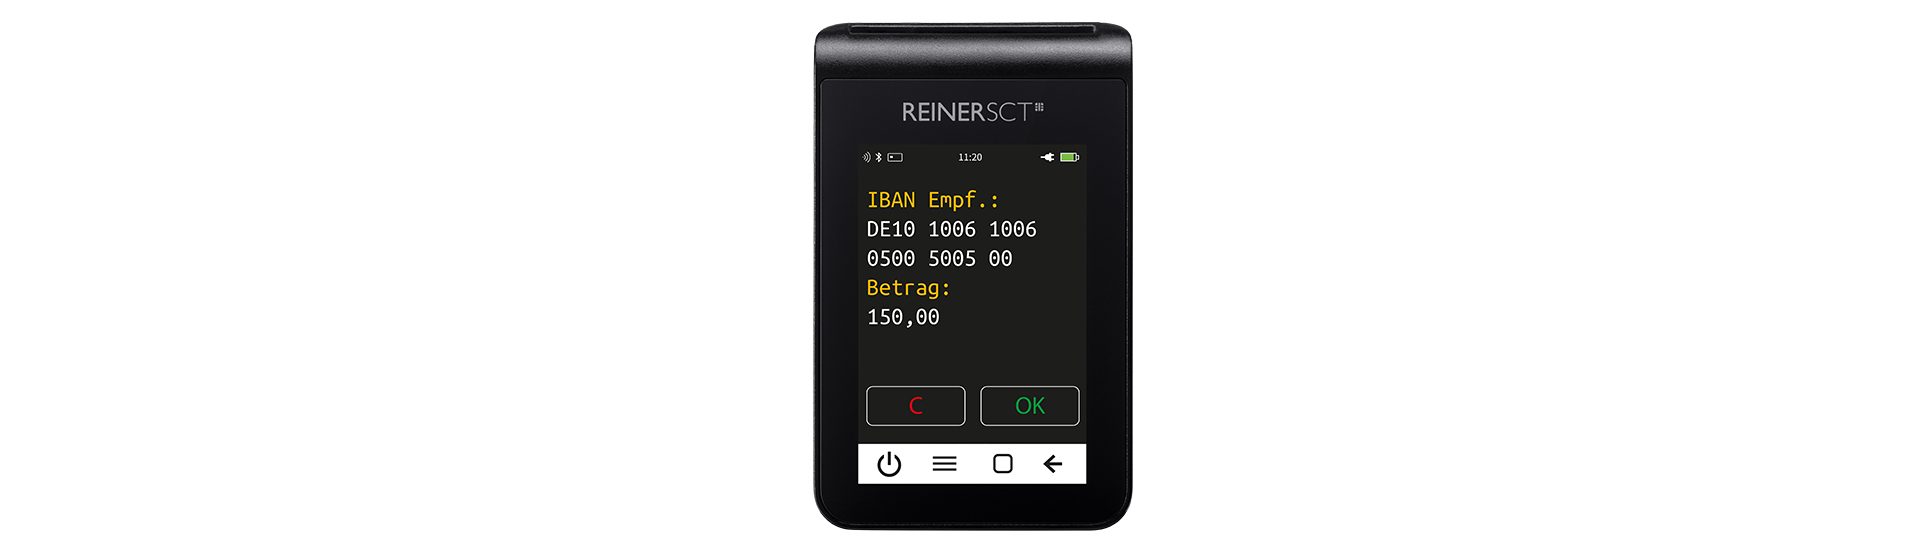 ReinerSCT Reiner SCT tanJack deluxe - Schwarz - TFT - 8,89 cm (3.5 Zoll) - 320 x 480 Pixel - CMOS - 70,5 mm